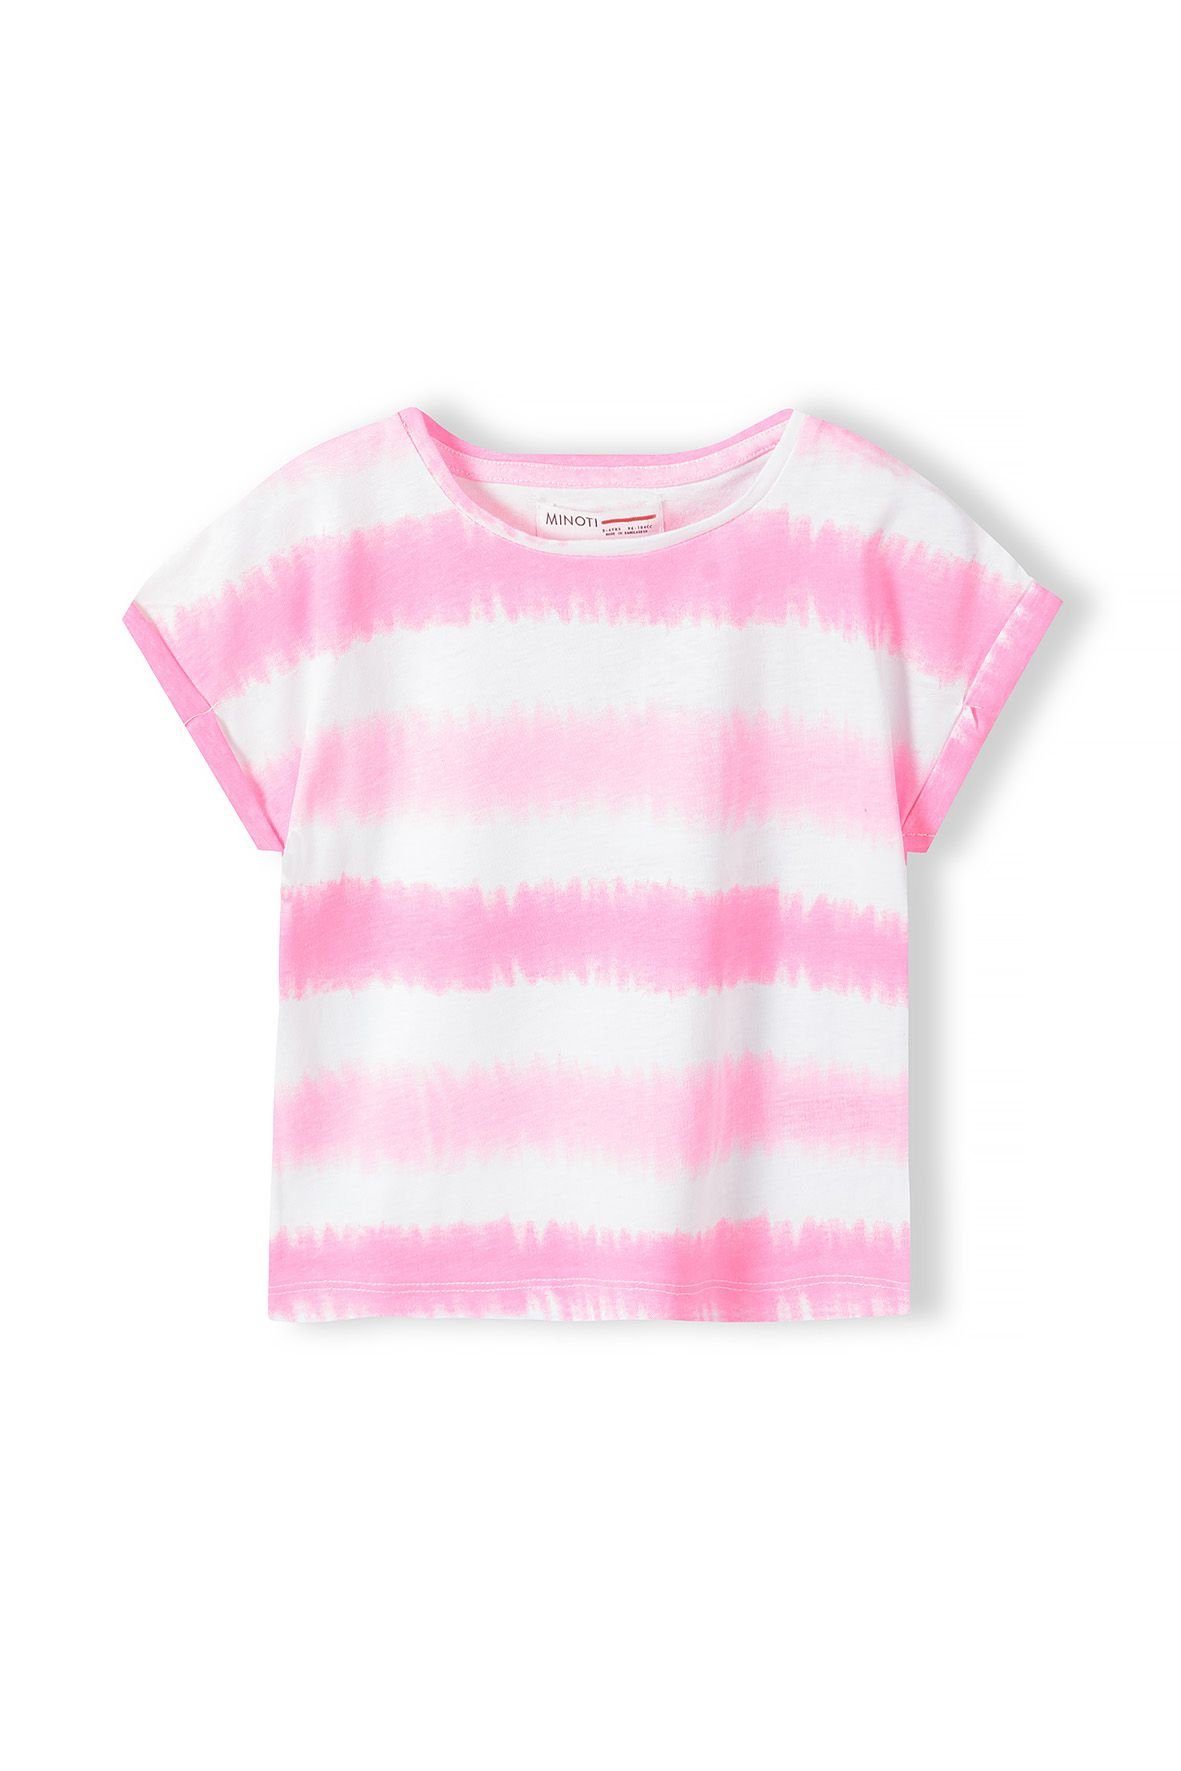 MINOTI T-Shirt Modisches T-Shirt mit Aufdruck (1y-8y) Rosa